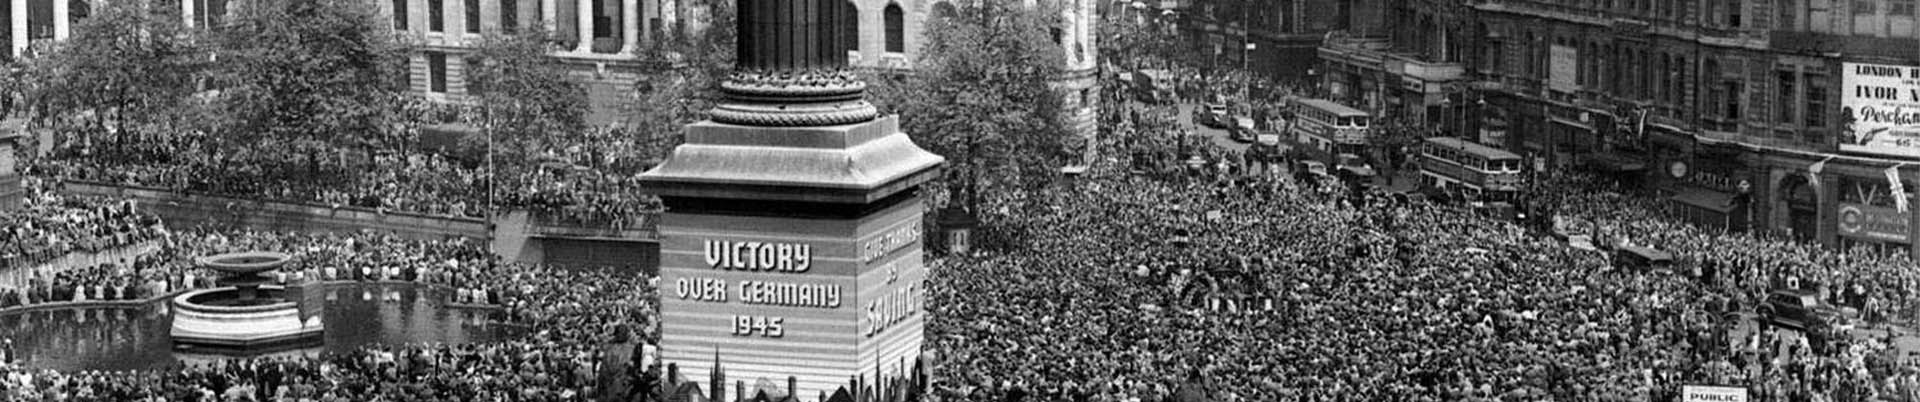 Picture of VE Celebrations in Trafalgar Square in London, UK from 1945